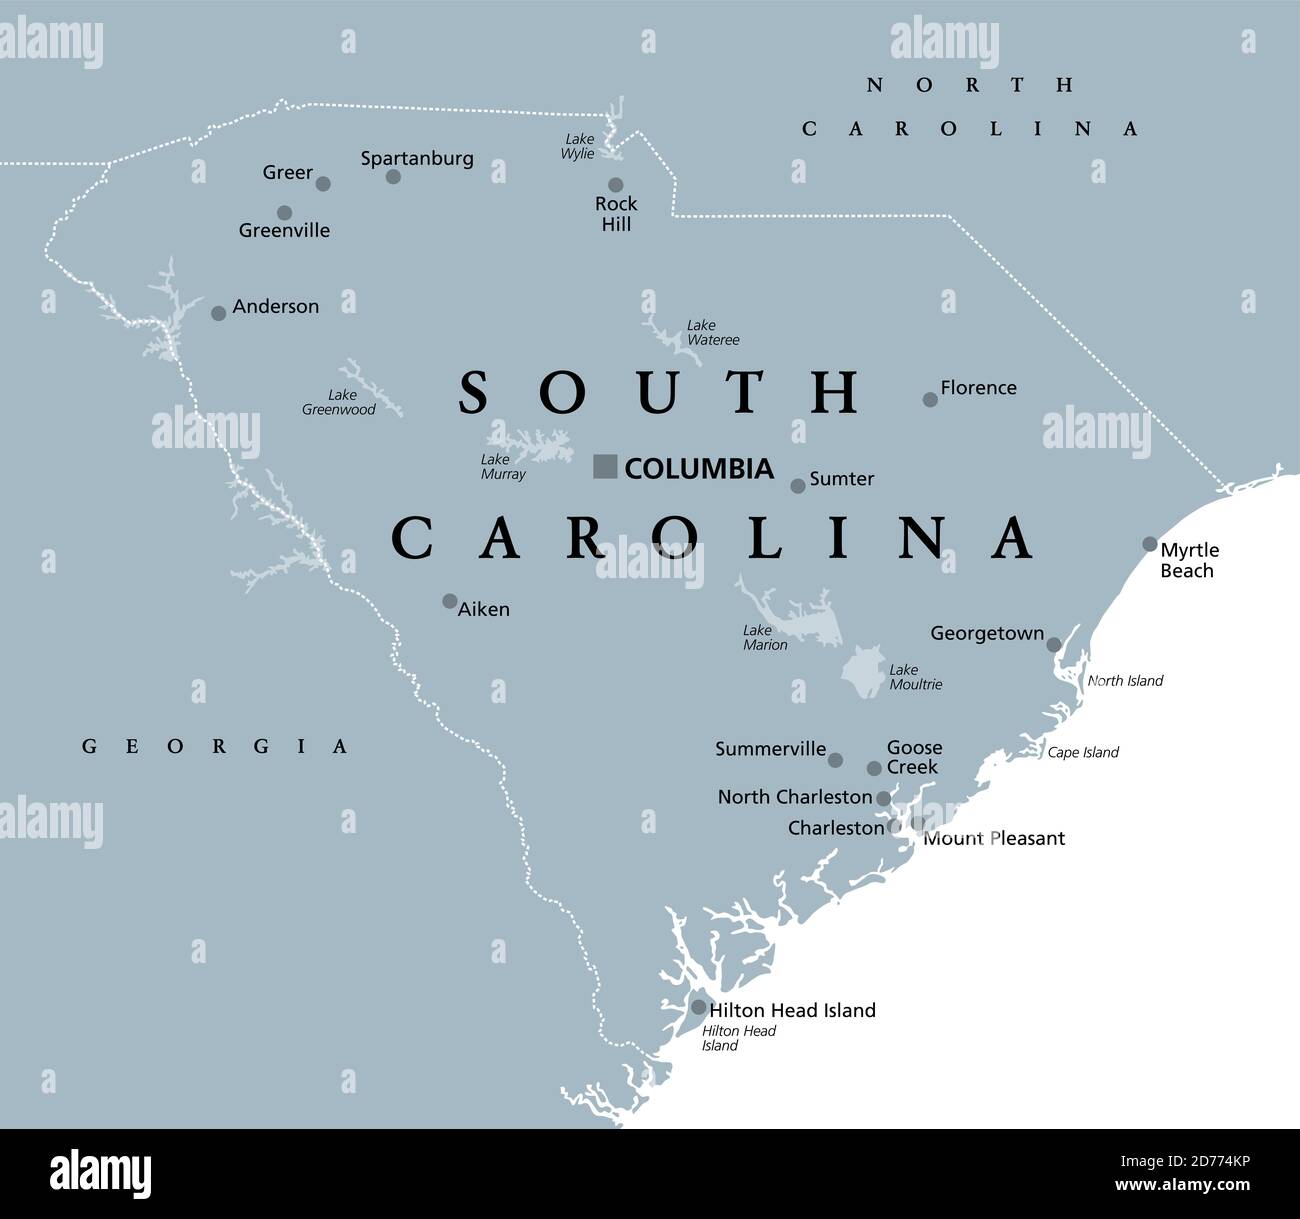 South Carolina, SC, graue politische Karte, mit Hauptstadt Columbia, größten Städten und Grenzen. Staat in der südöstlichen Region der Vereinigten Staaten. Stockfoto